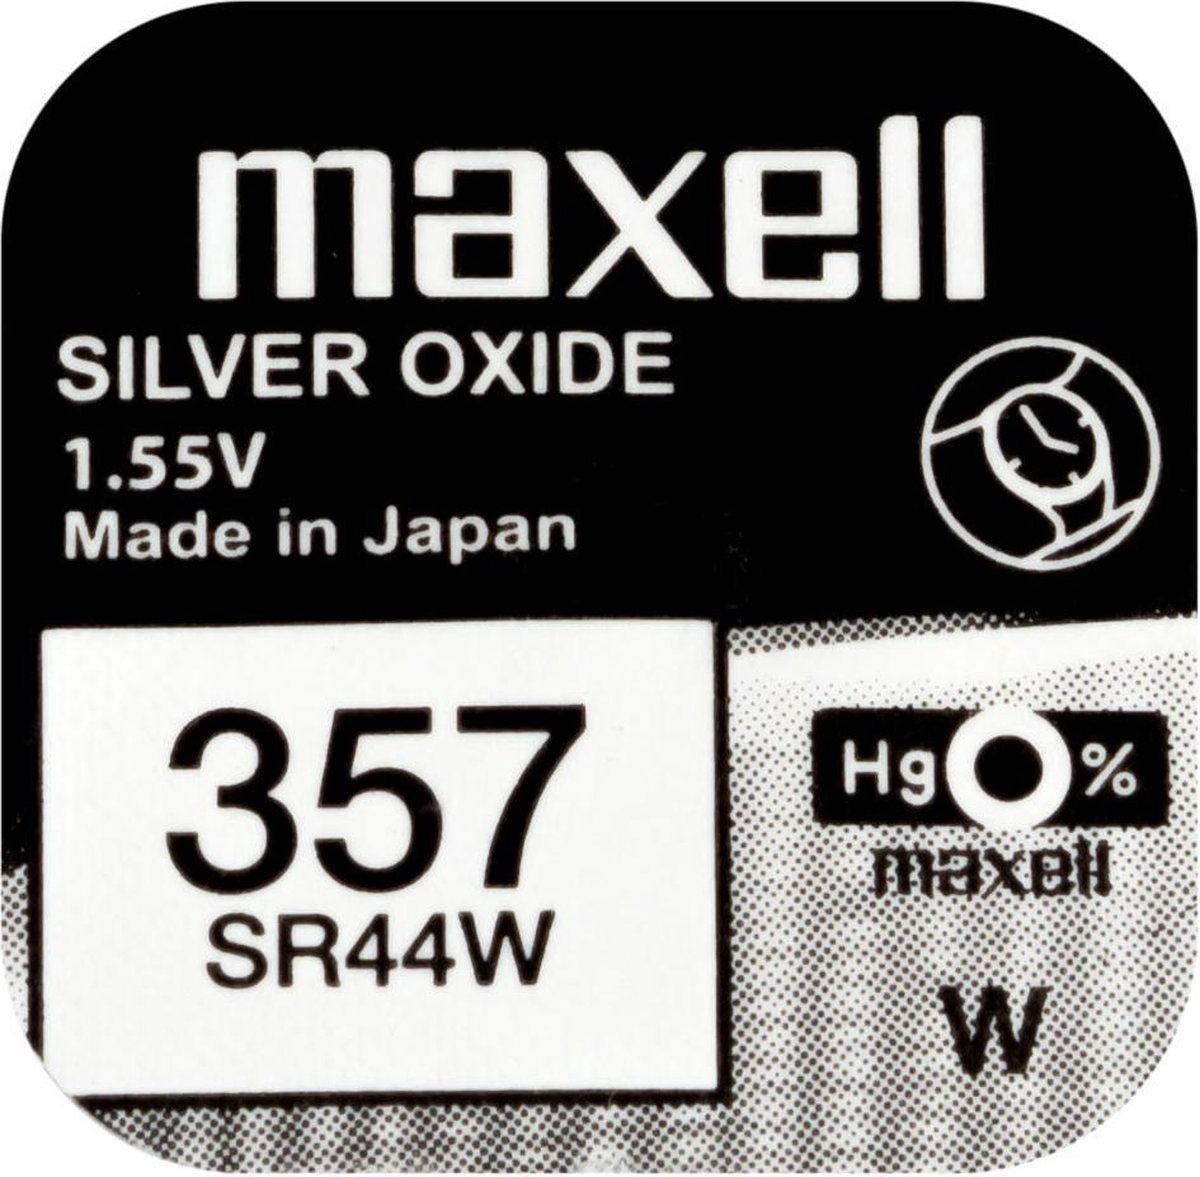 MAXELL 357 - SR44W - Zilveroxide Knoopcel - horlogebatterij - 2 (twee) stuks